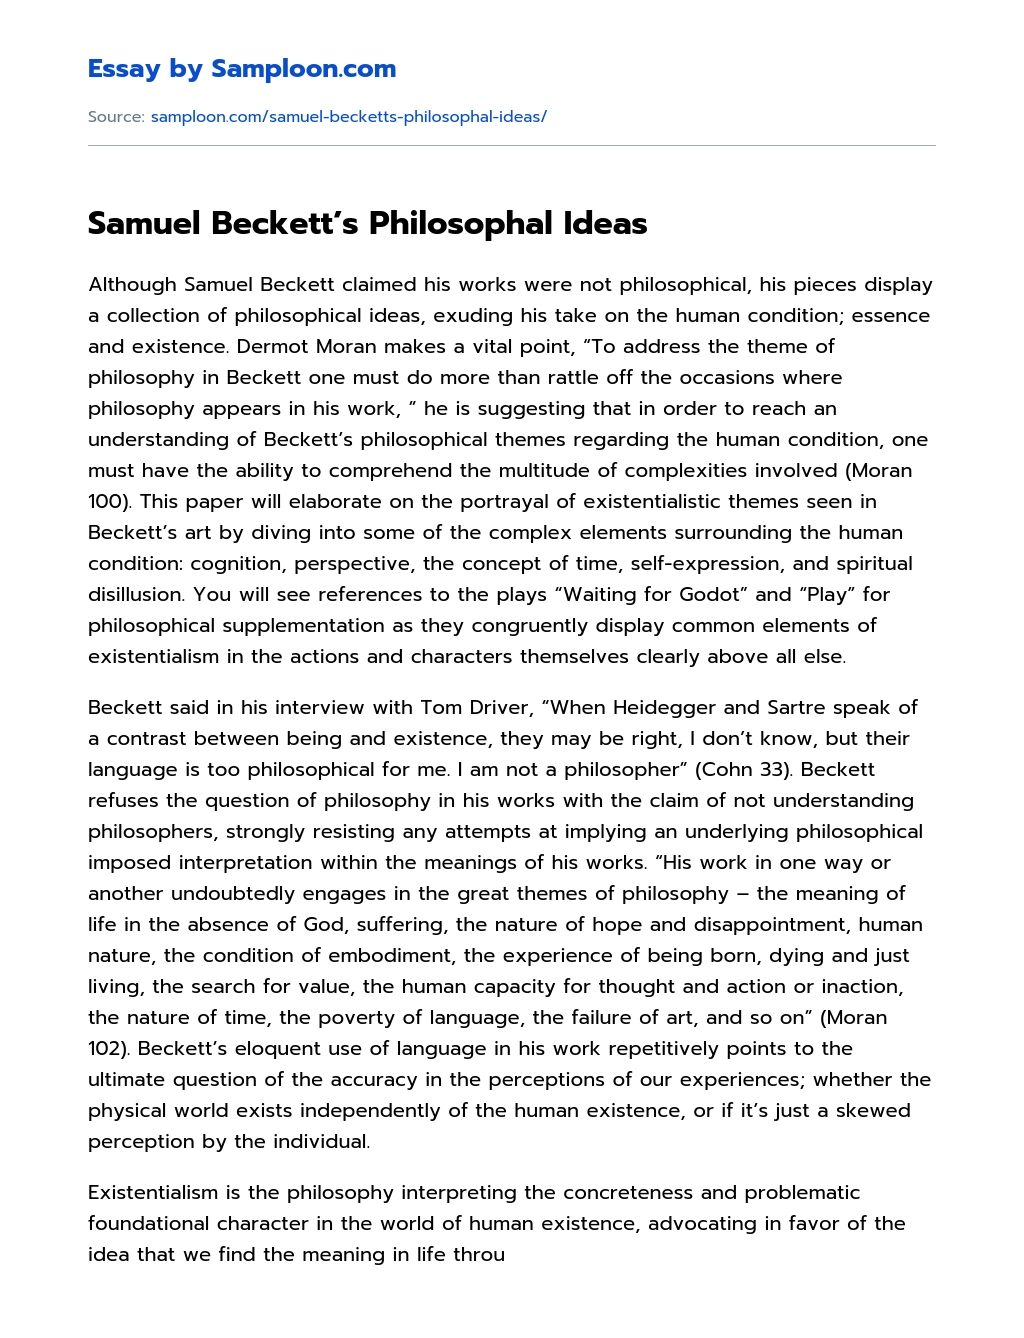 Samuel Beckett’s Philosophal Ideas essay